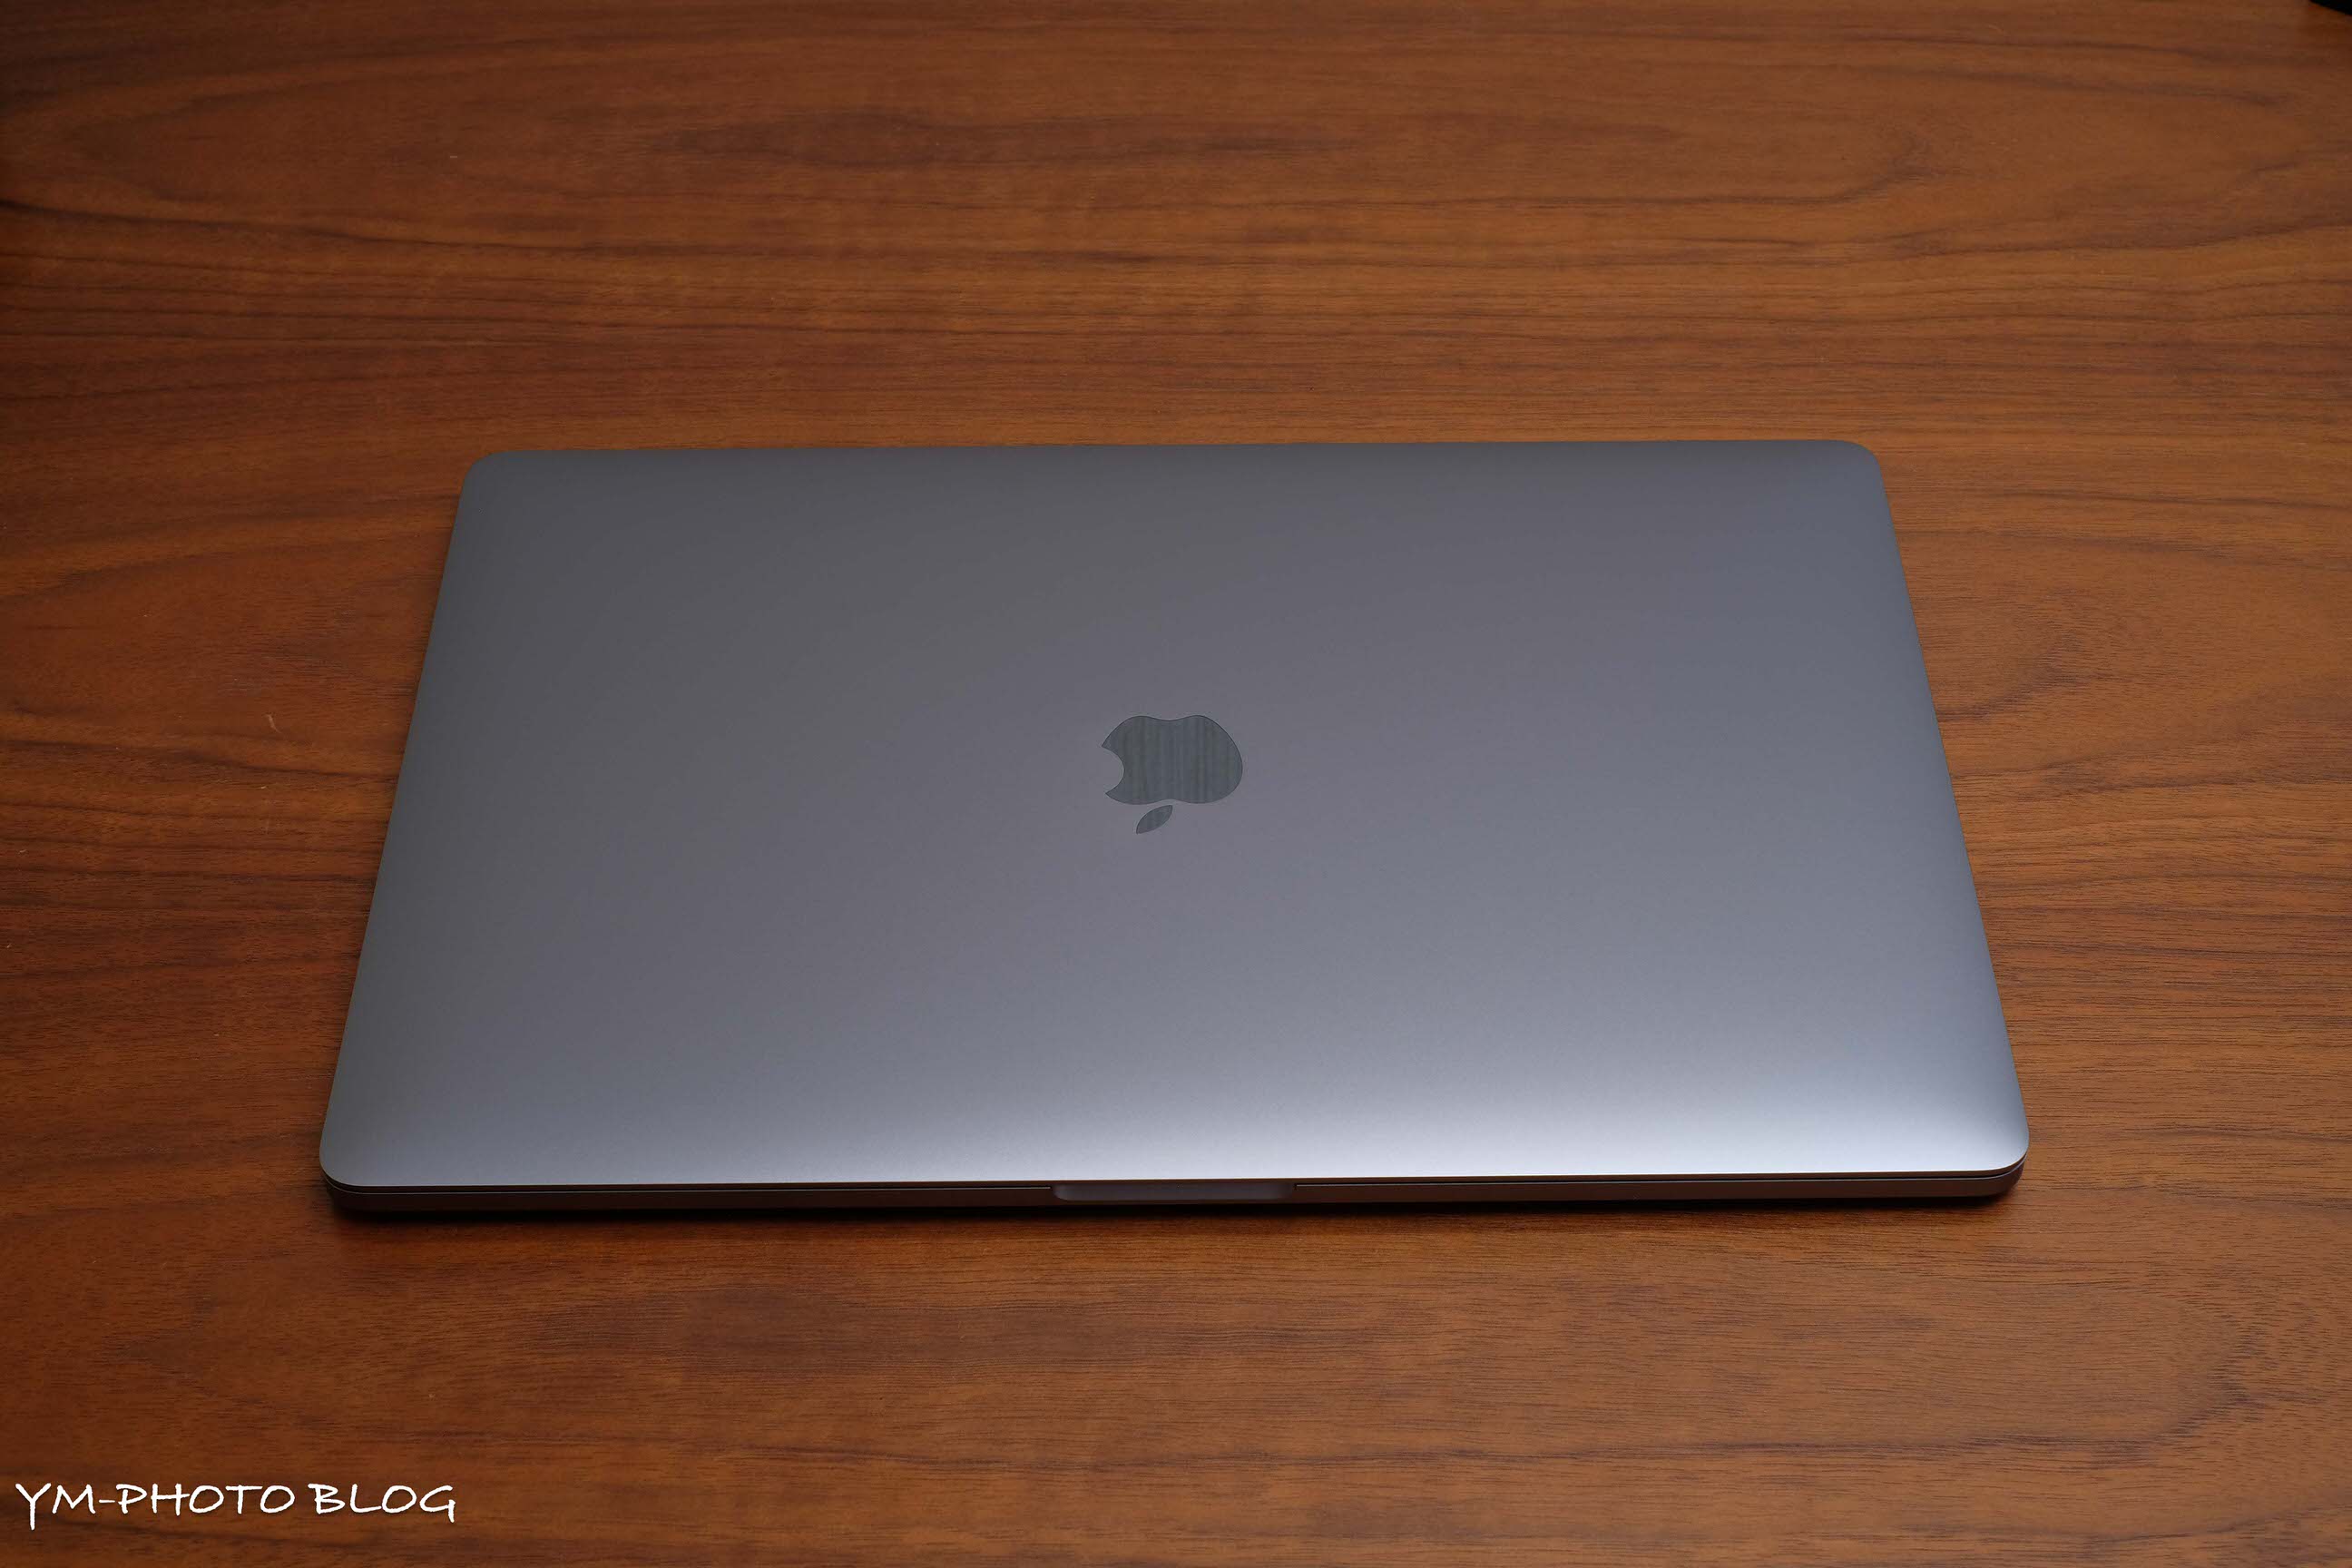 機材レビュー】Apple MacBook Pro (15-inch, 2018) YM-PHOTO BLOG